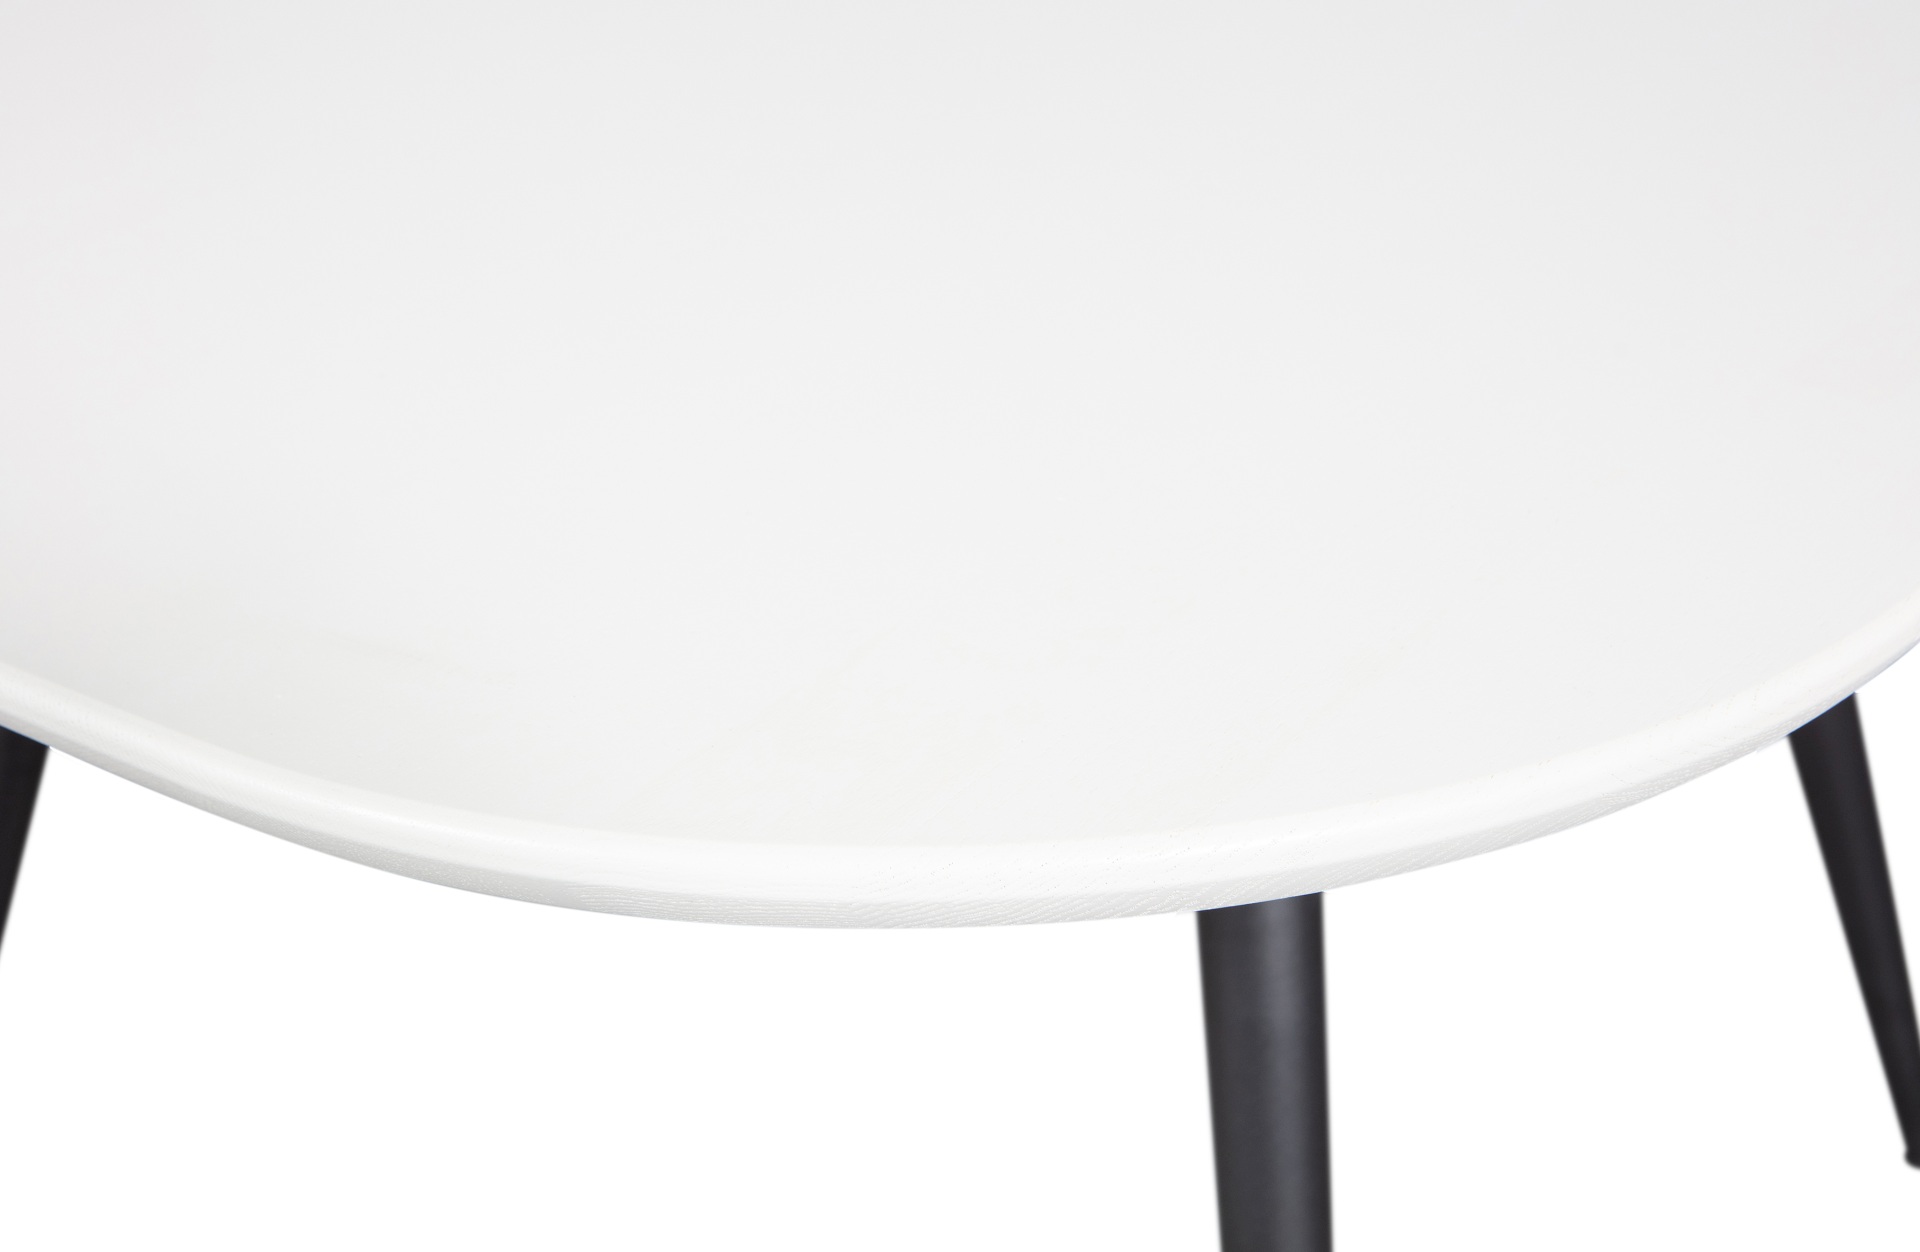 Der Esstisch Tablo überzeugt mit ihrem klassischen Design. Gefertigt wurde er aus Eschenholz, welches einen weißen Farbton besitzt. Das Gestell ist aus Metall und hat eine schwarze Farbe. Die Breite des Tisches beträgt 130 cm.